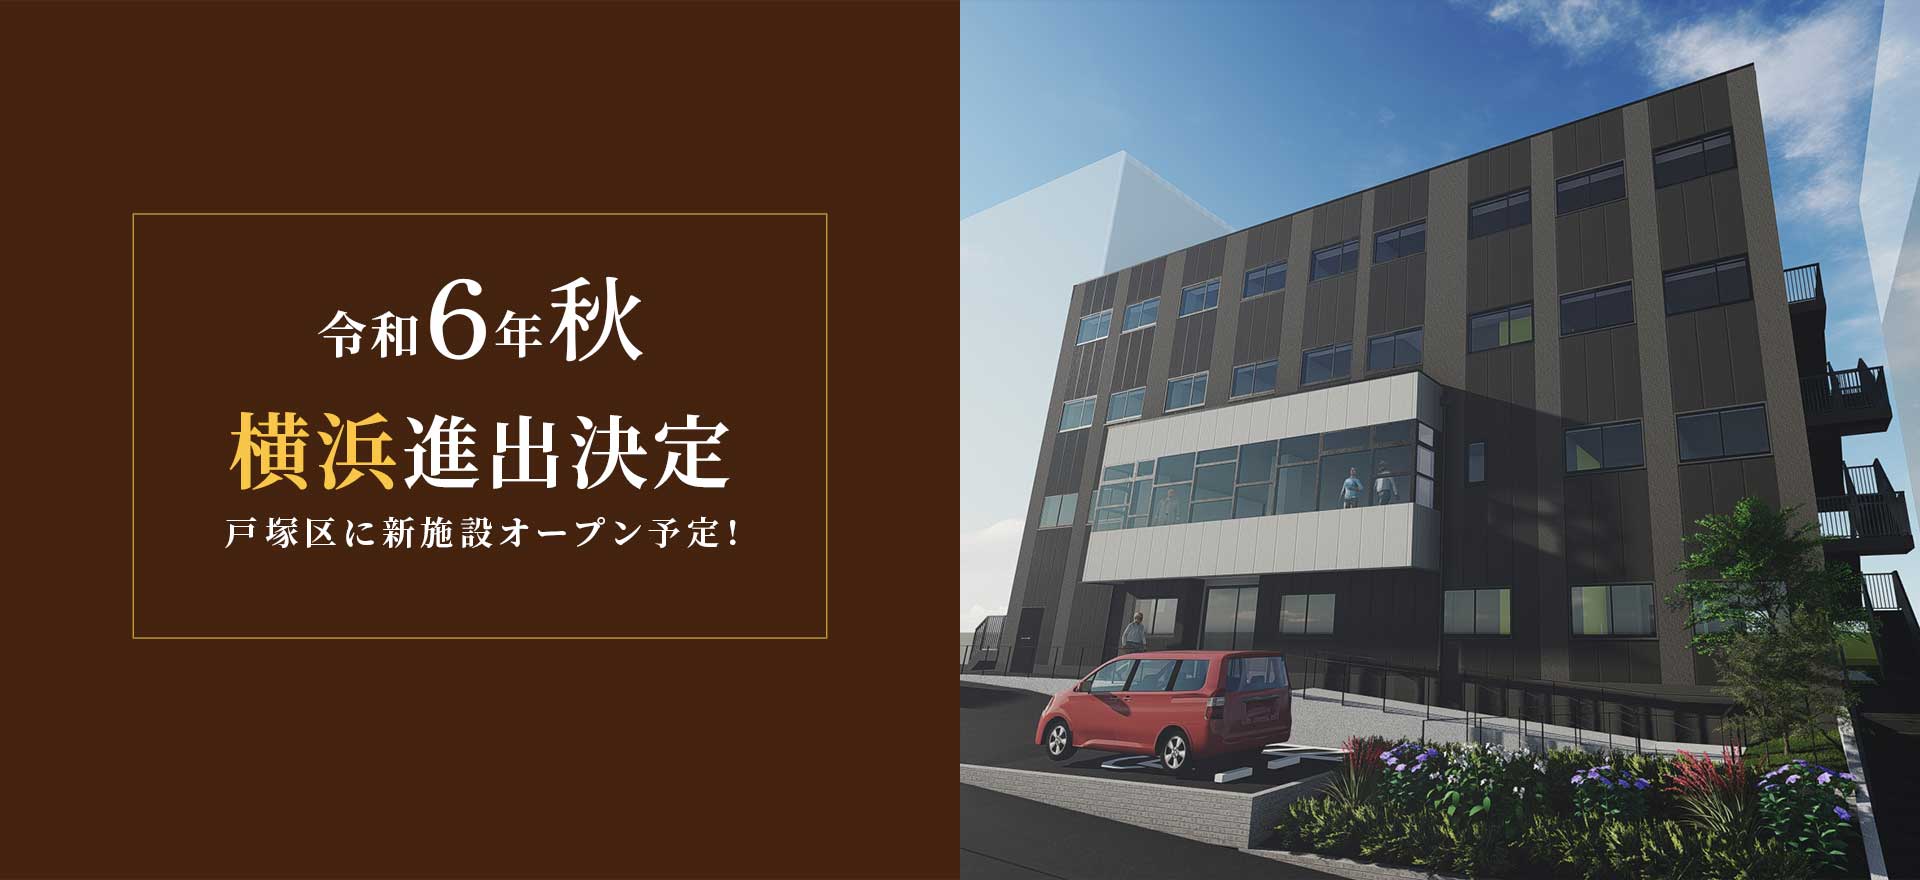 令和6年秋、横浜進出決定、戸塚区に新施設オープン予定！